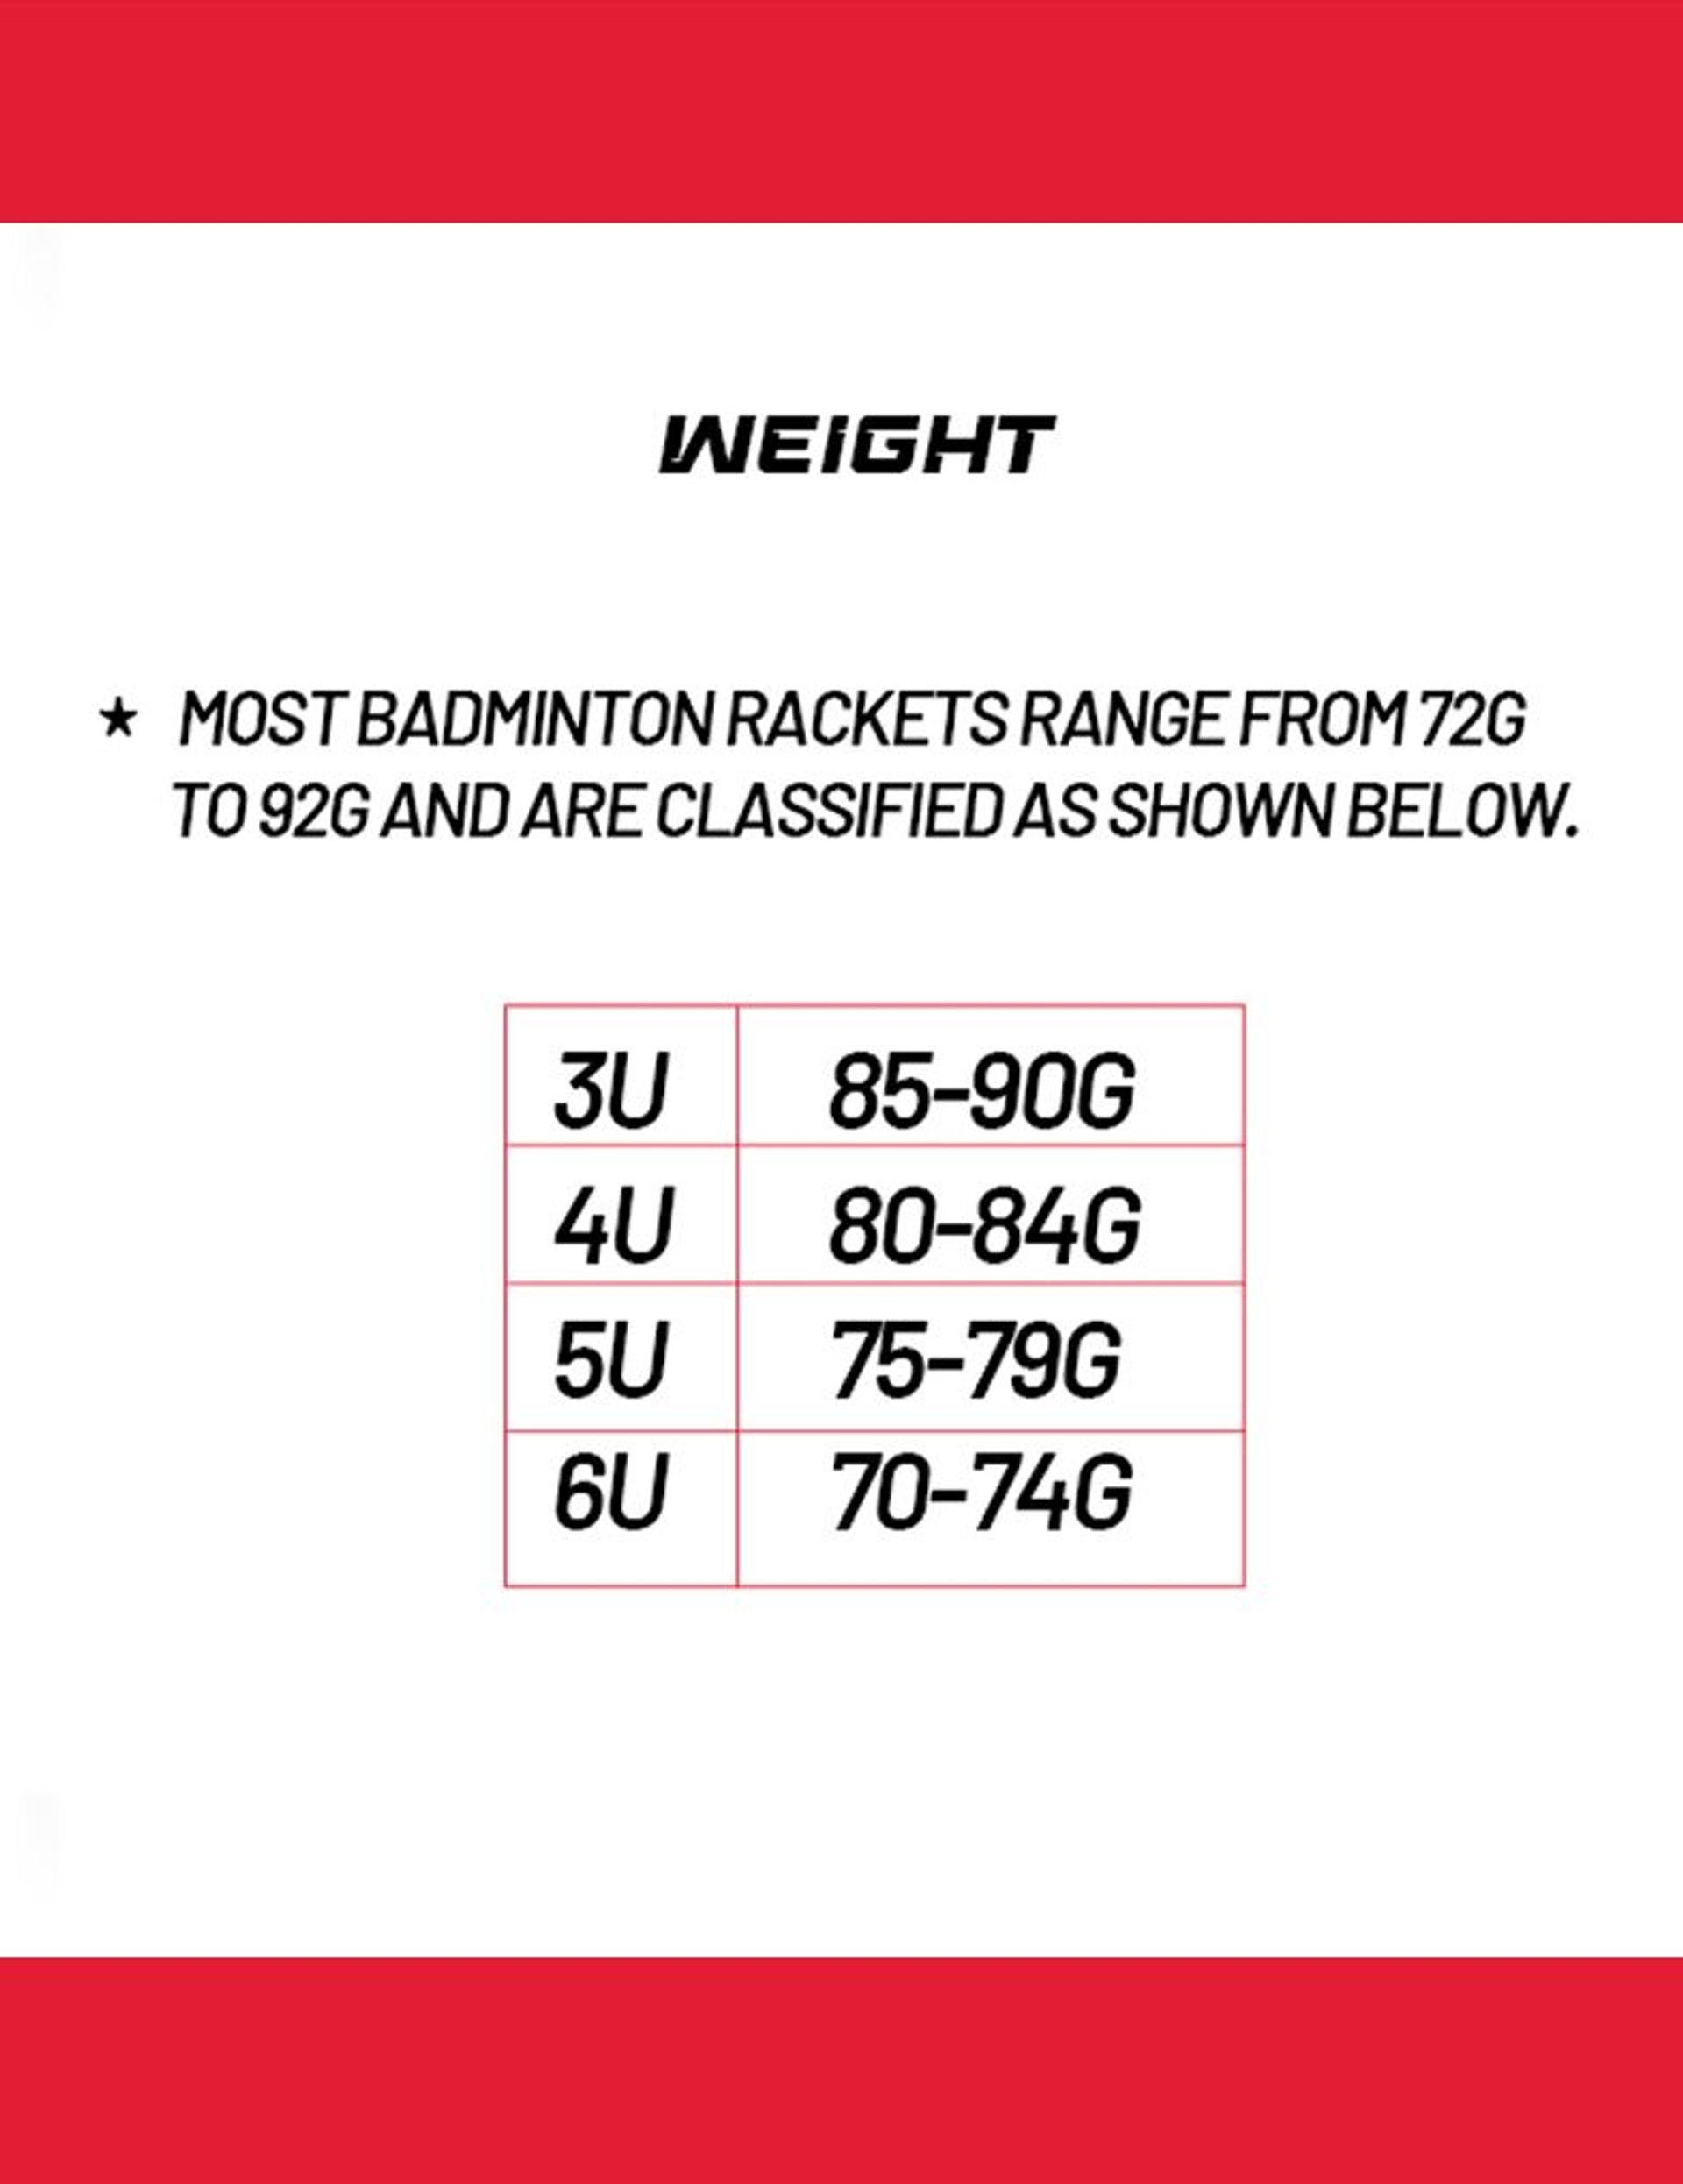 Badminton racket weight range